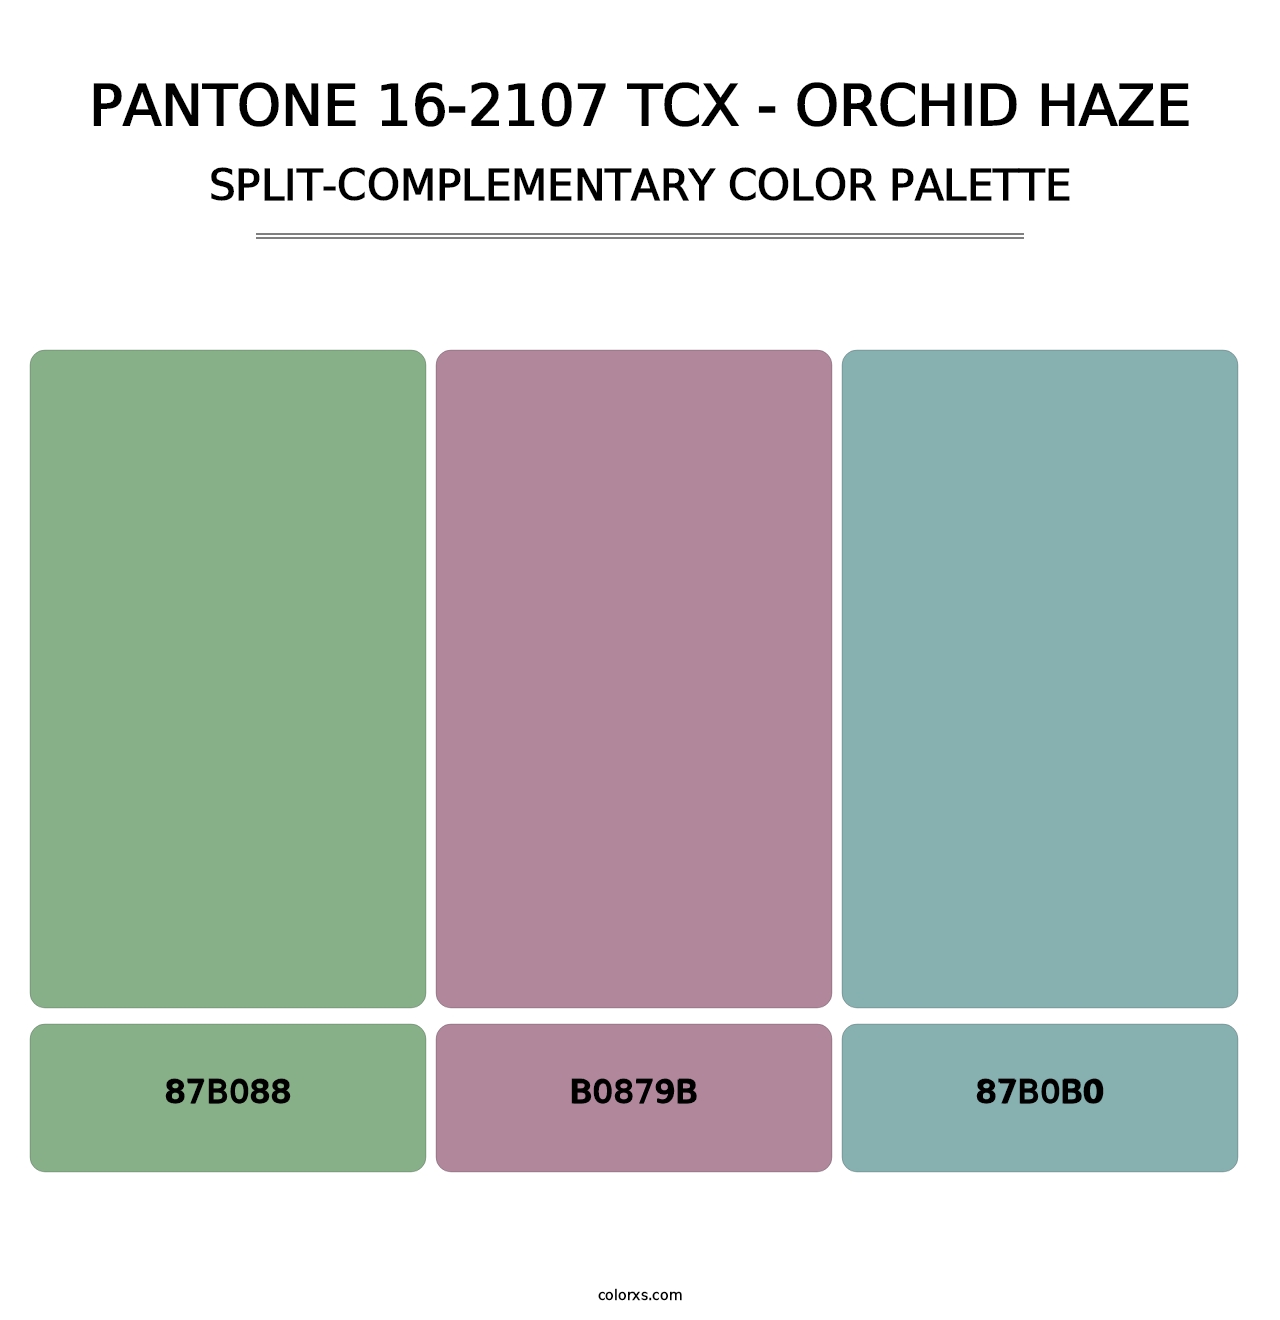 PANTONE 16-2107 TCX - Orchid Haze - Split-Complementary Color Palette